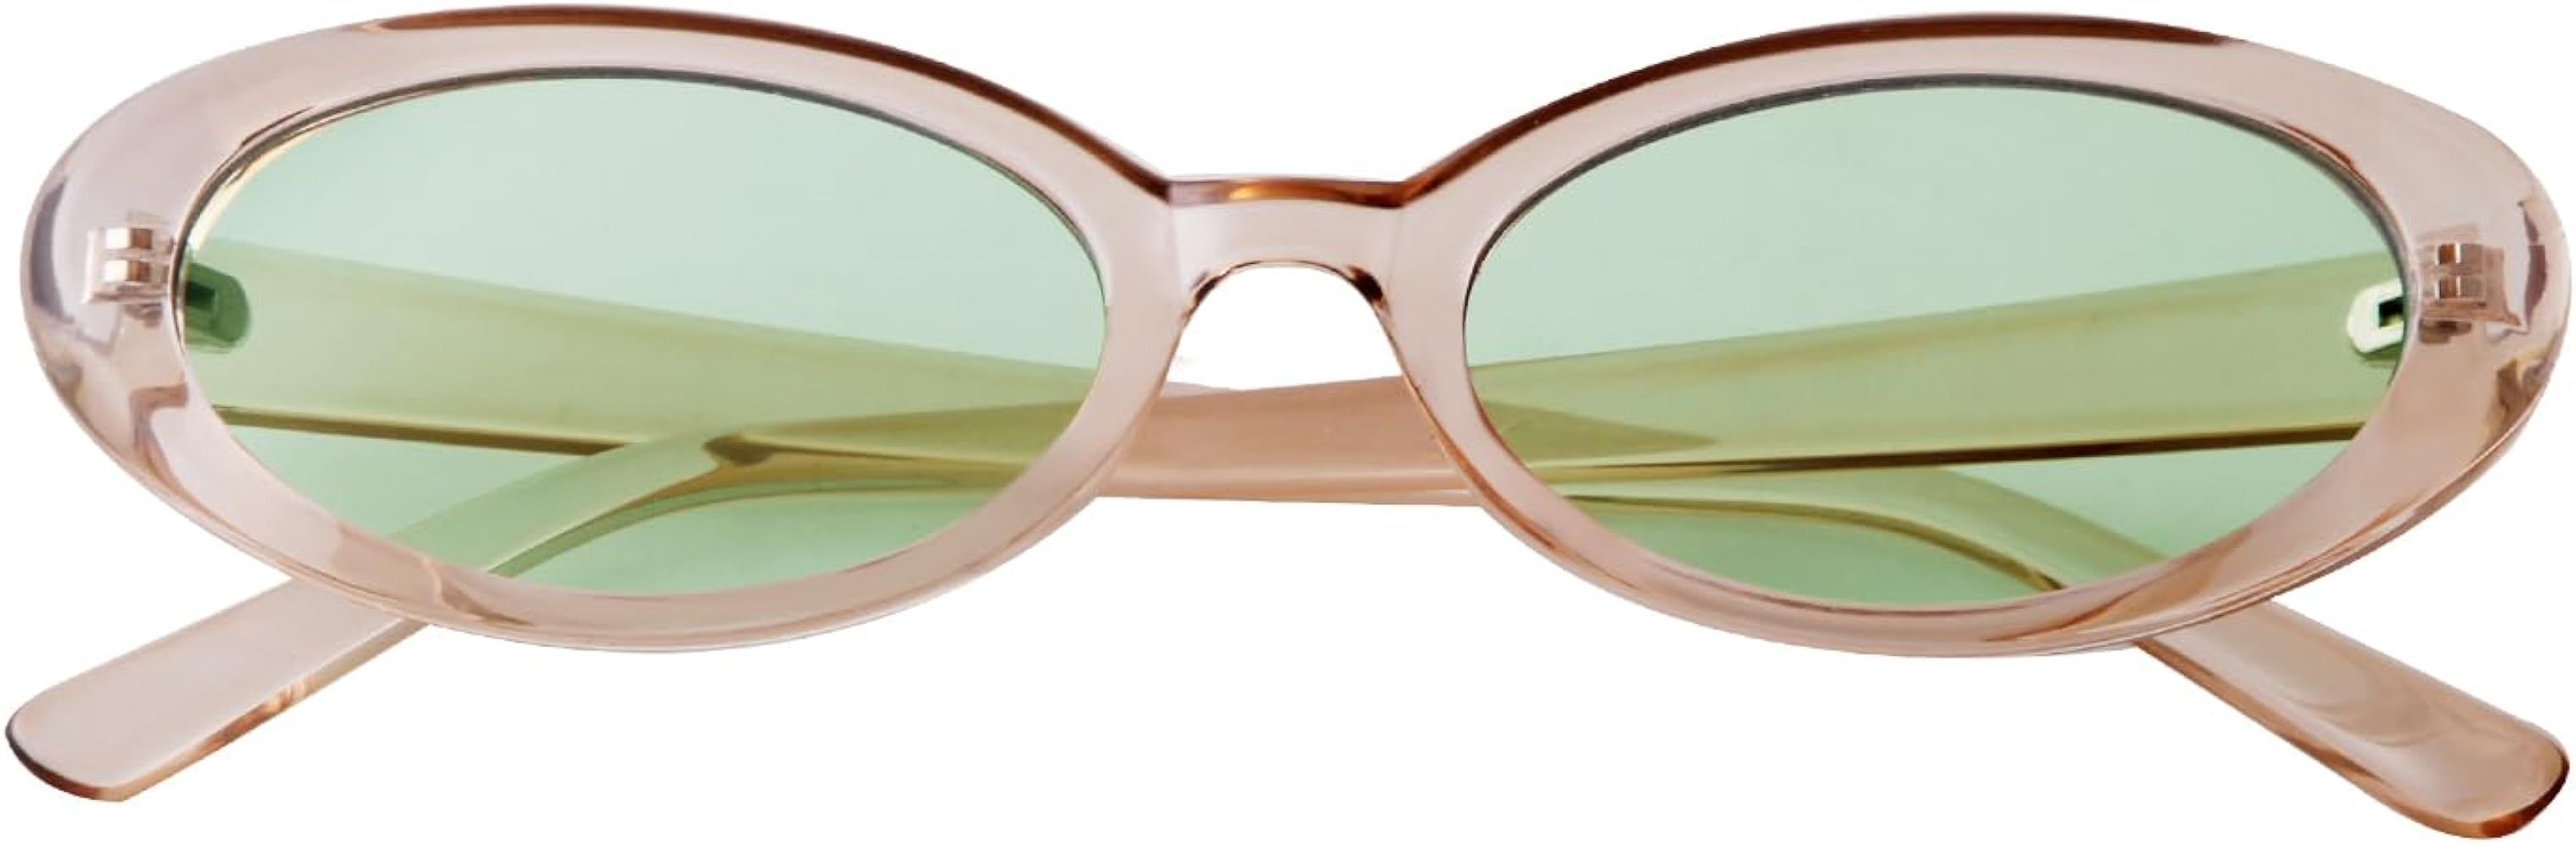 90s Sunglasses for Women Men Retro Oval Sunglasses Glasses | Amazon (US)